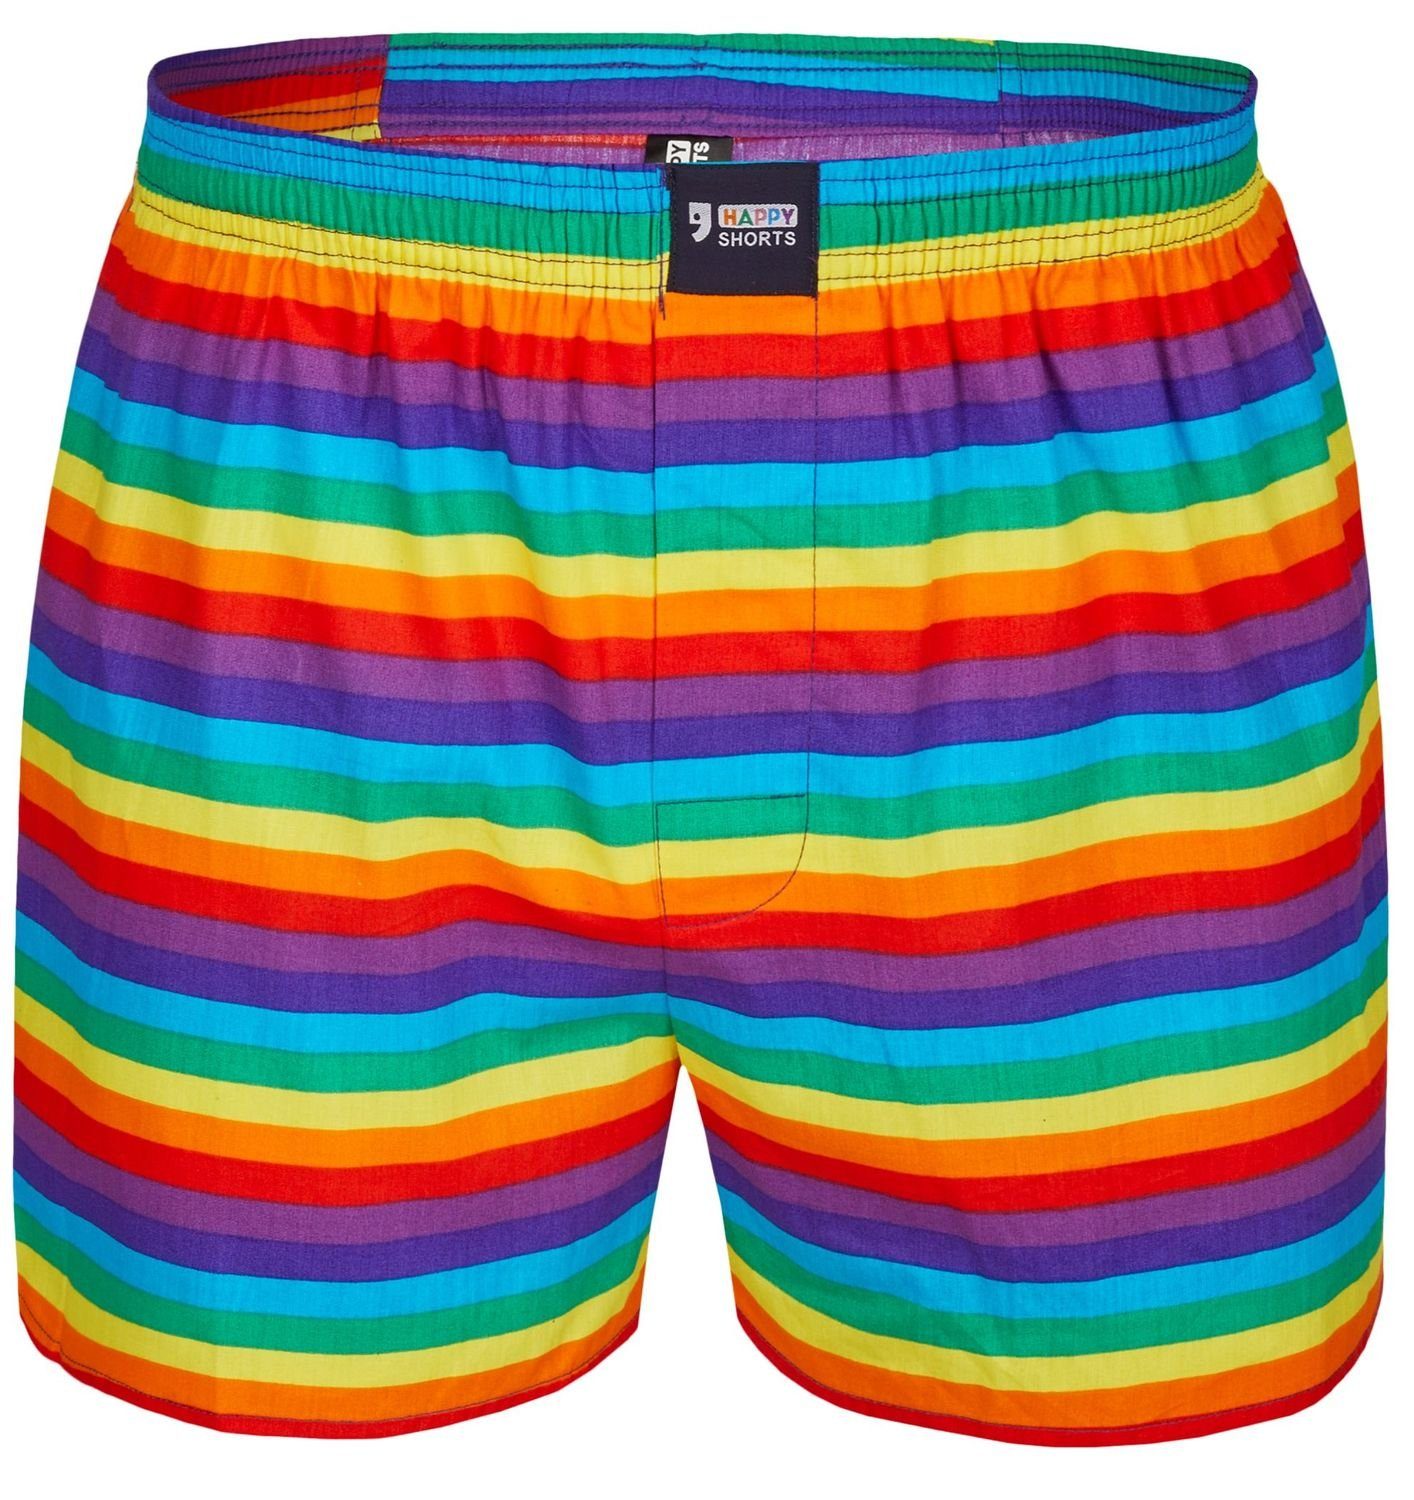 HAPPY SHORTS Boxershorts »Happy Shorts Herren american Boxer Boxershorts  Shorts Webboxer Pride Stripes Streifen« (1 Stück) online kaufen | OTTO